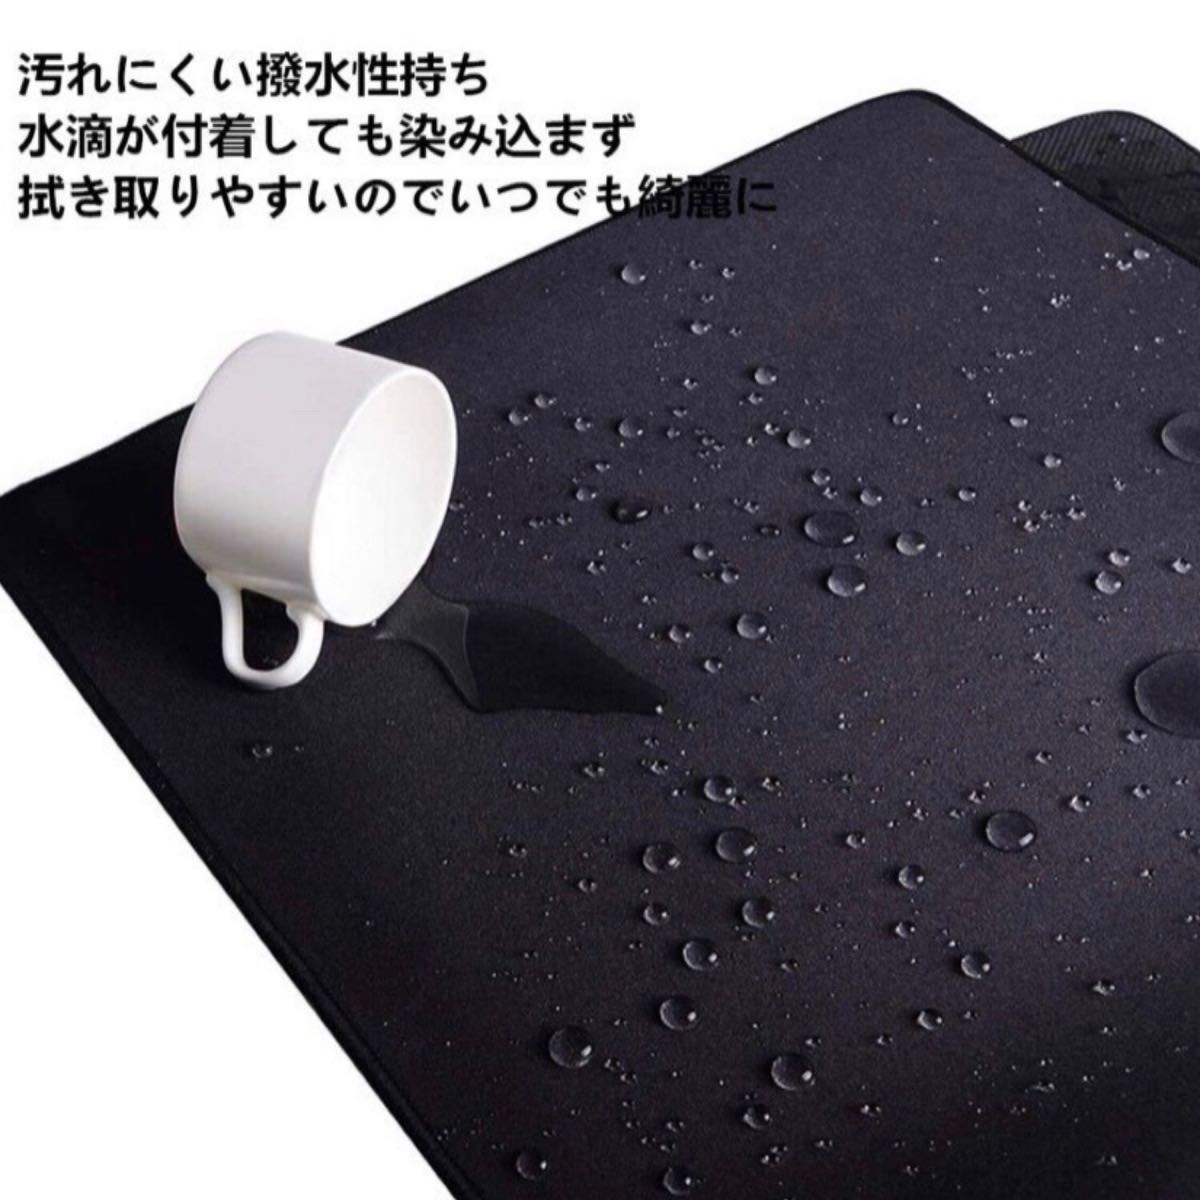 【大幅値下げSALE】マウスパッド 光学式 ゲーミング レーザー式 ゲーミングマウスパッド 撥水 防水